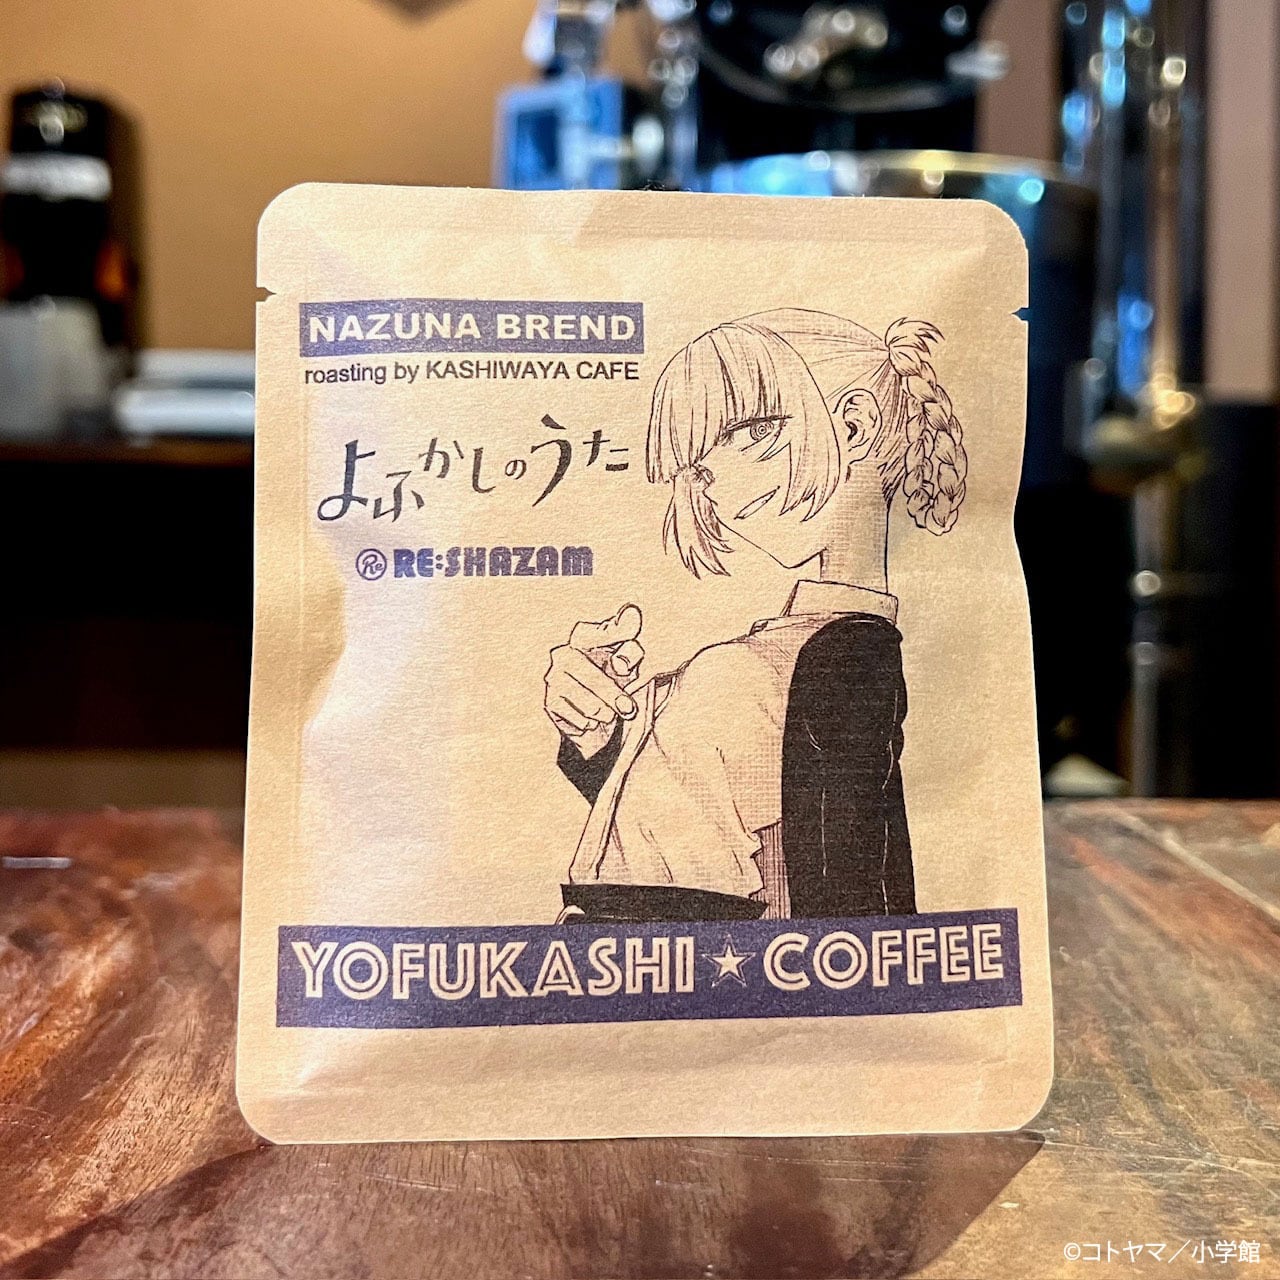 ※オンラインストア限定〈よふかしのうた〉YOFUKASHI COFFEE